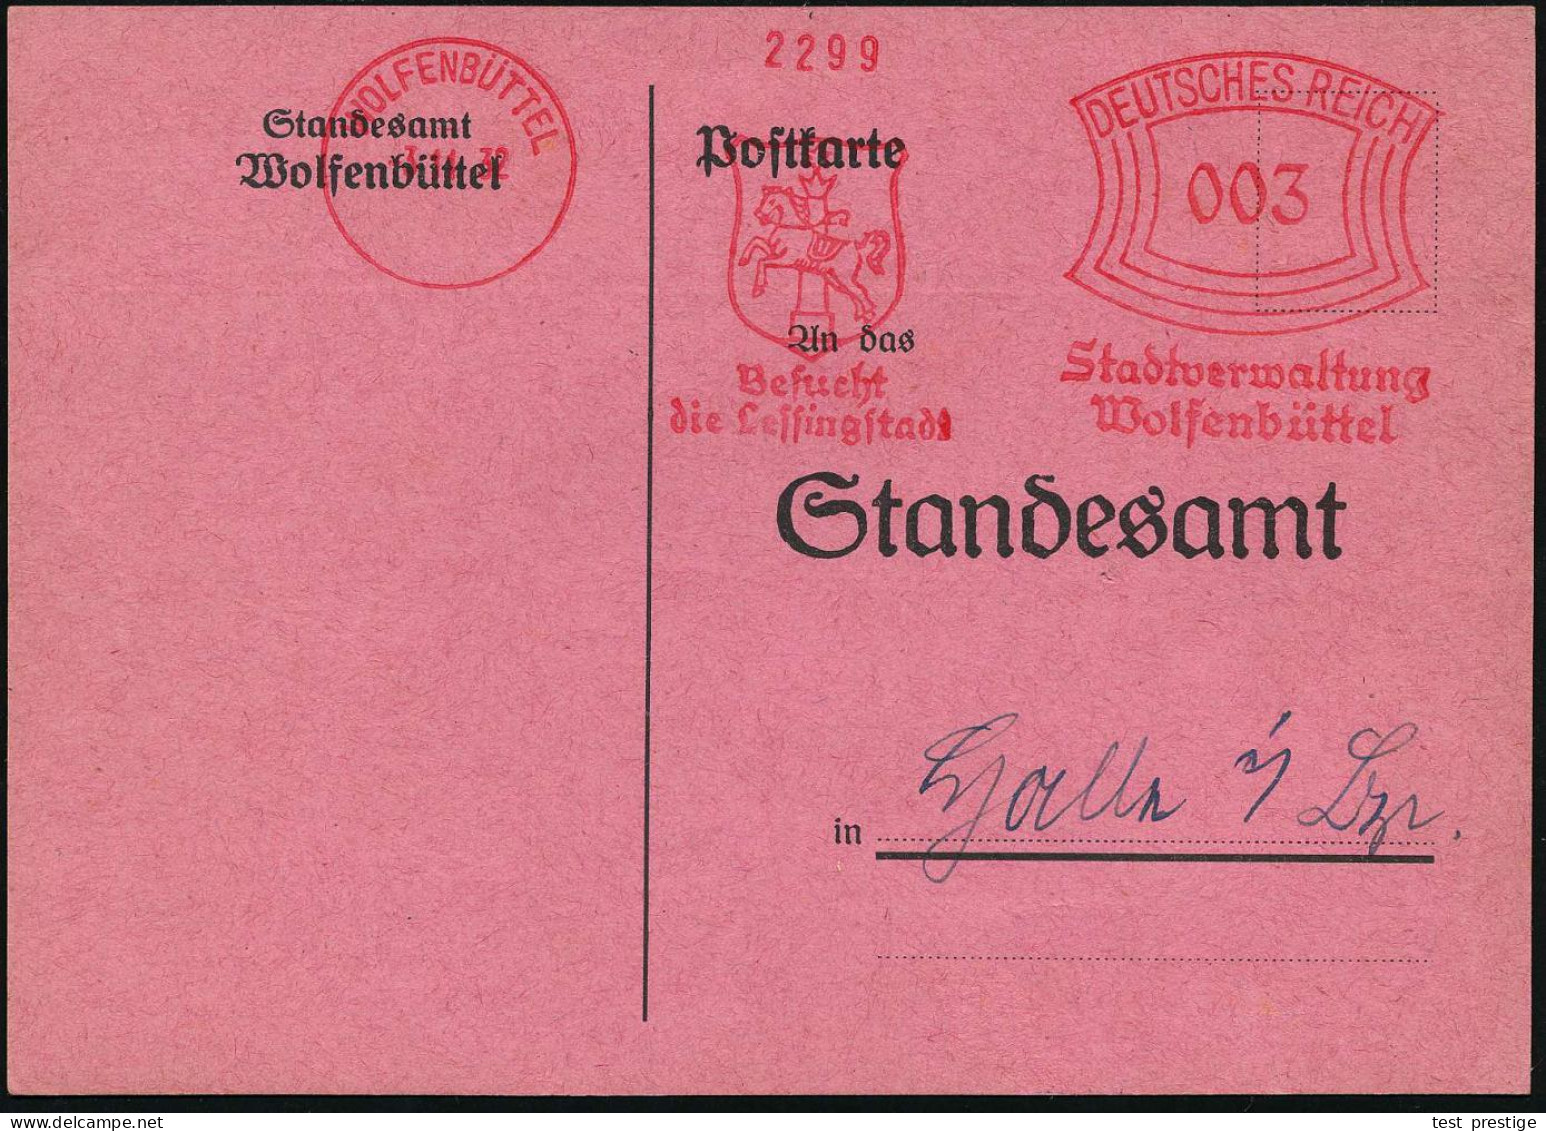 WOLFENBÜTTEL/ Besucht/ Die Lessingstadt/ Stadtverwaltung.. 1932 (3.11.) Seltener AFS Francotyp (Stadtwappen Mit Pferd) K - Théâtre